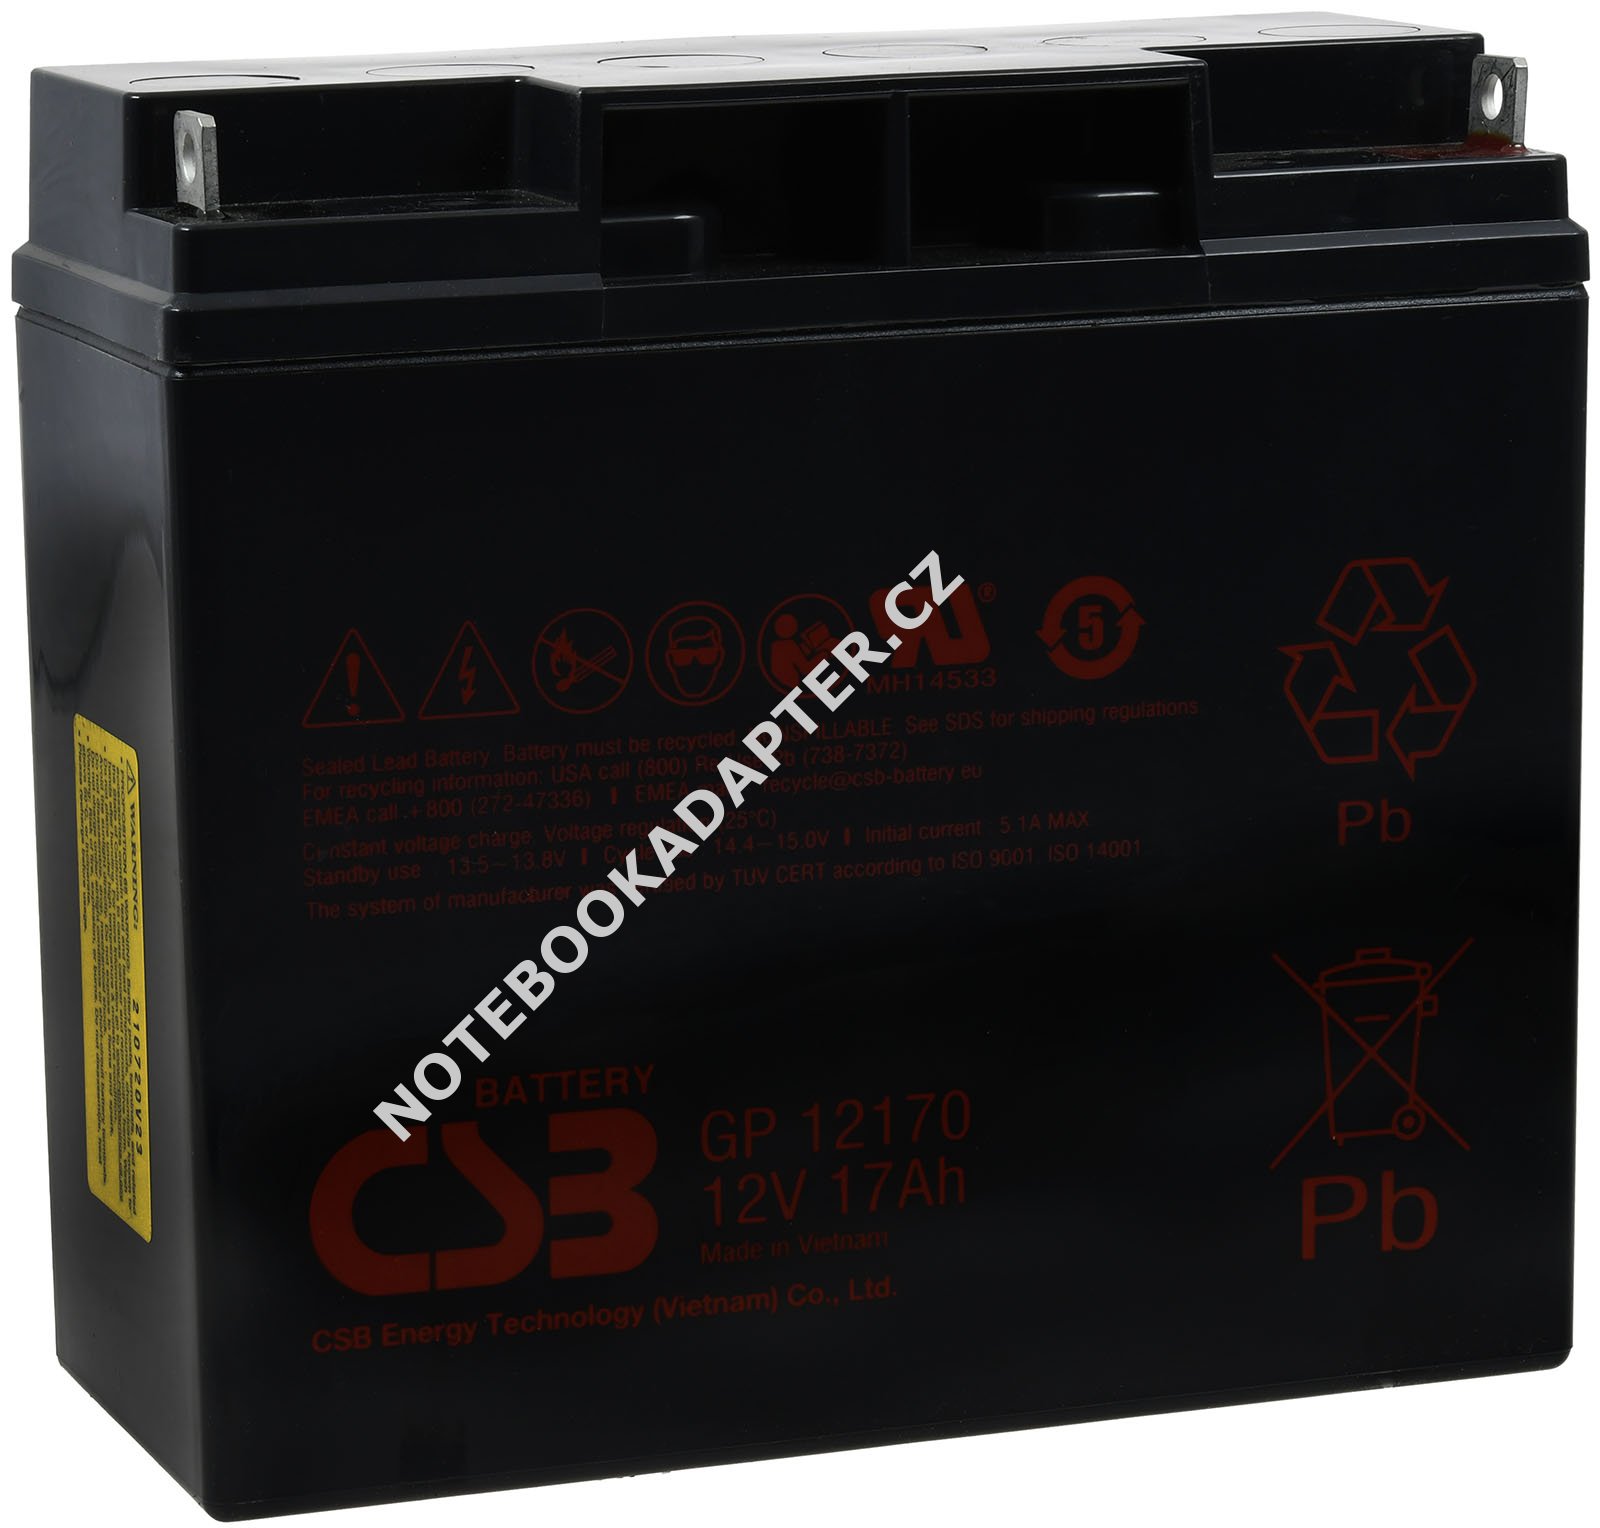 CSB Standby olověná baterie GP12170 12V 17Ah originál